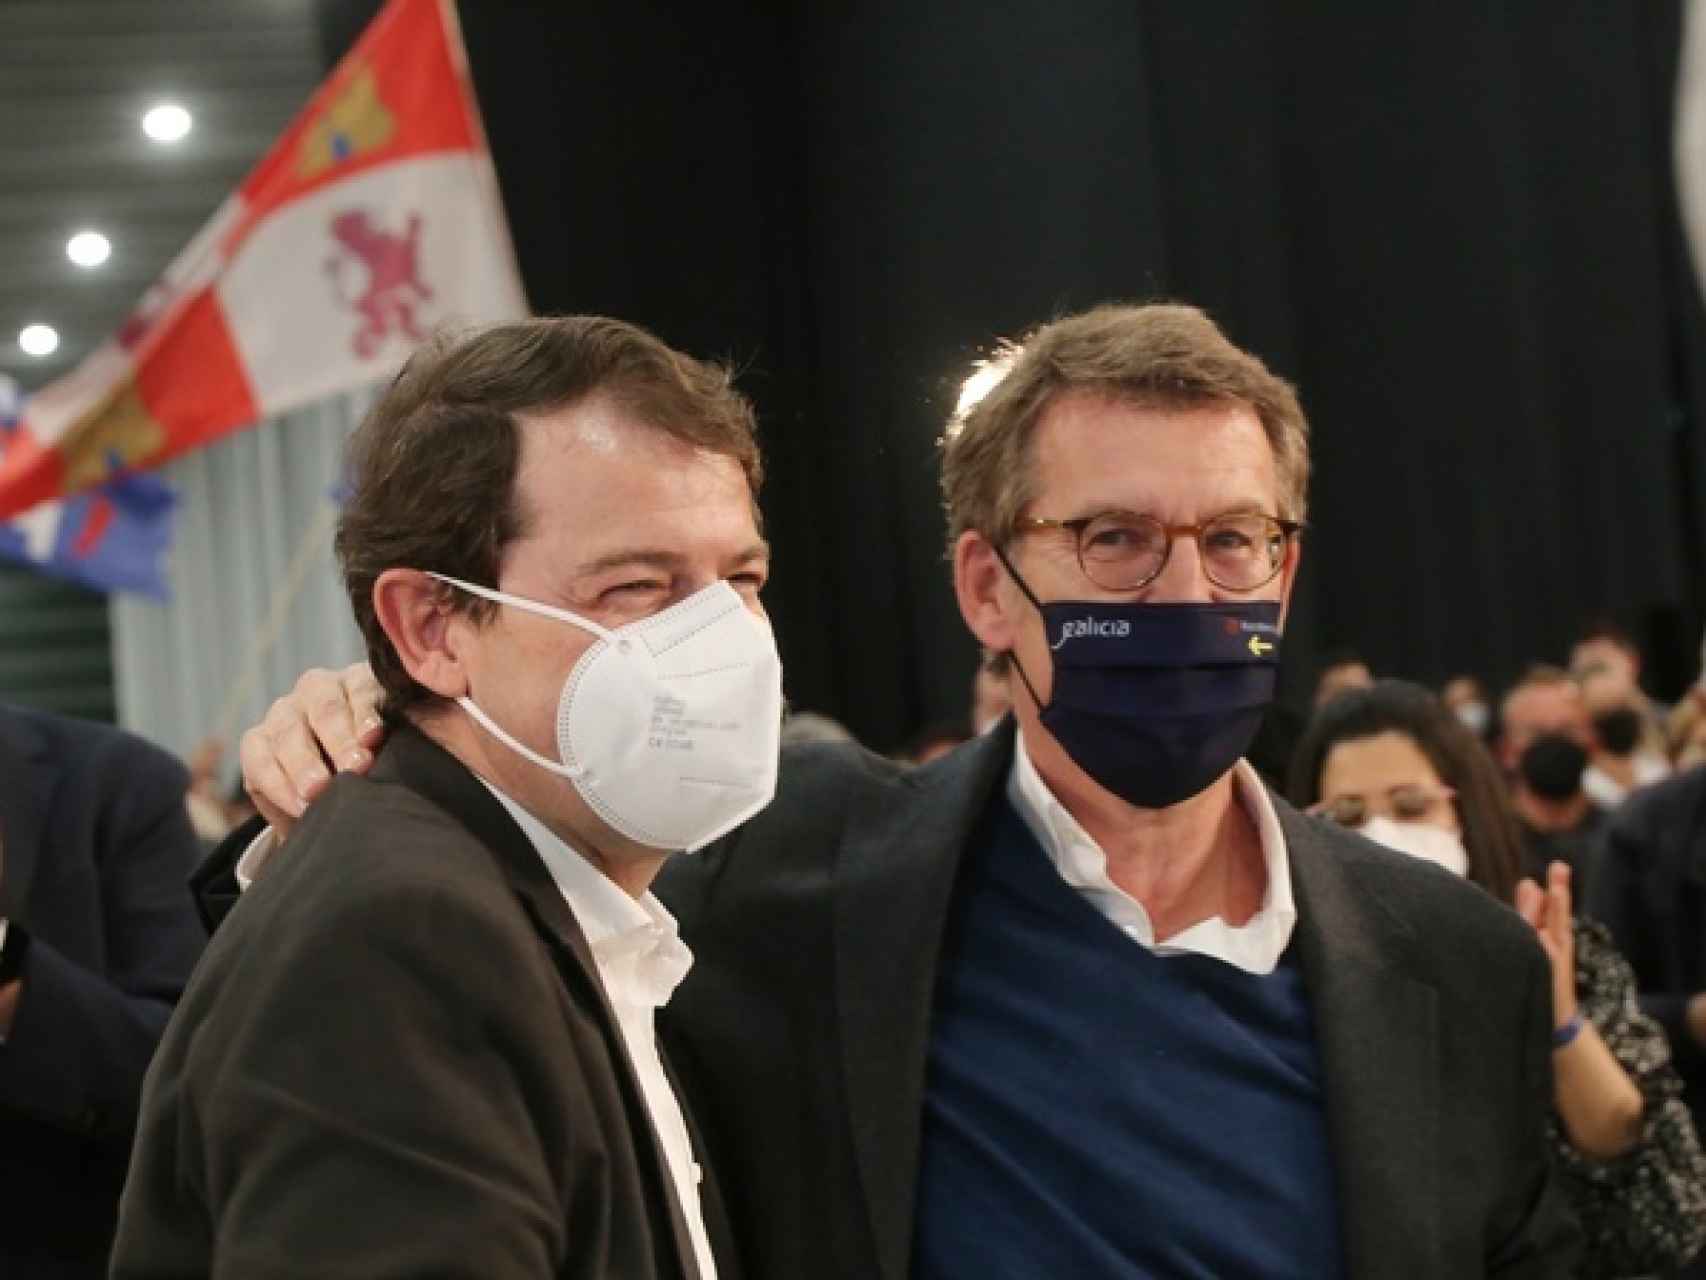 Alfonso Fernández Mañueco y Alberto Núñez Feijóo en un acto de la campaña electoral del PP en Zamora.